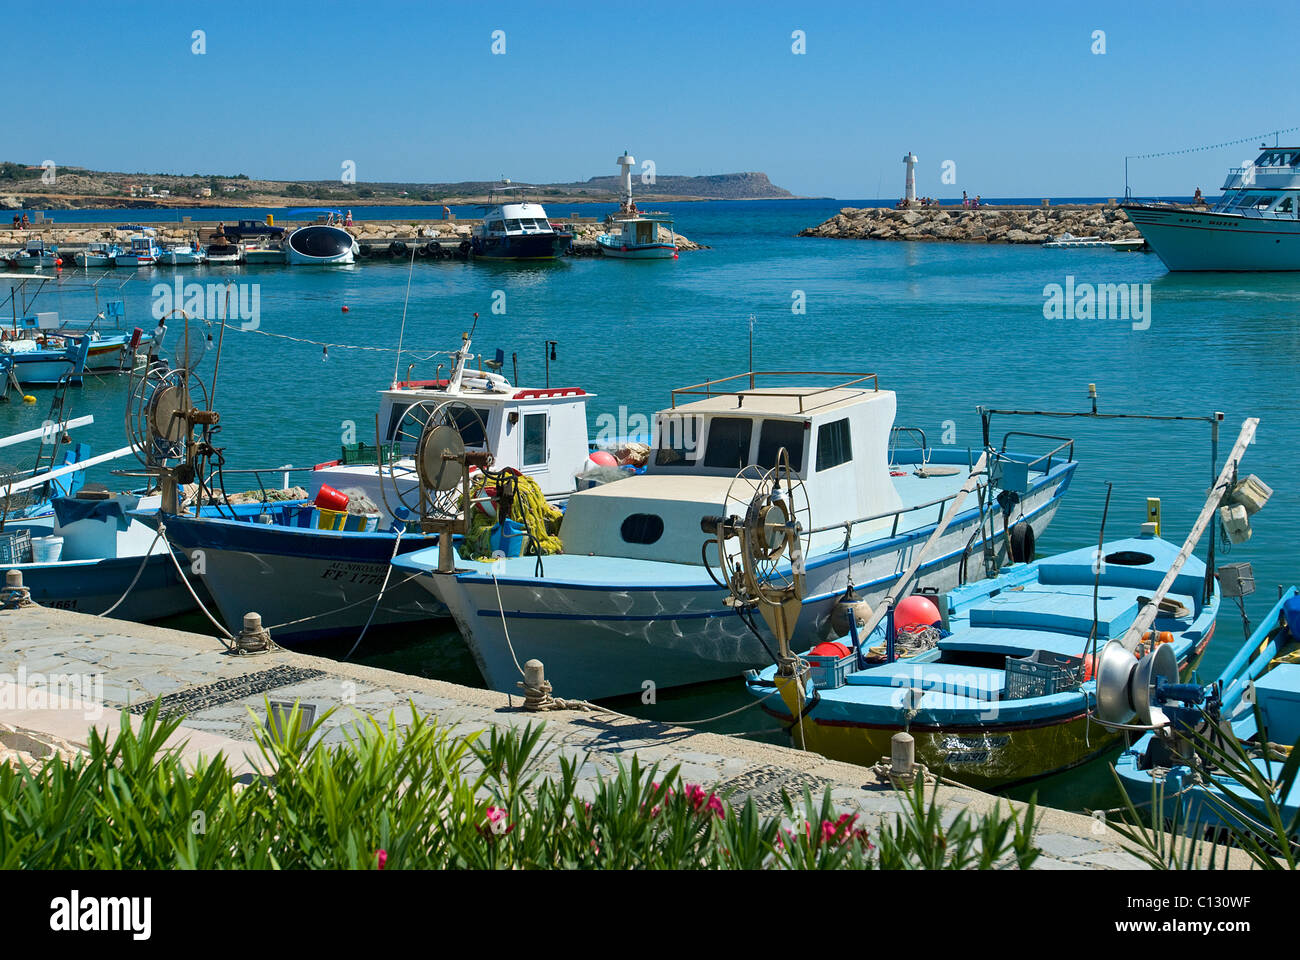 Bateaux de pêche dans le port de Liminaki, Ayia Napa, Chypre Banque D'Images